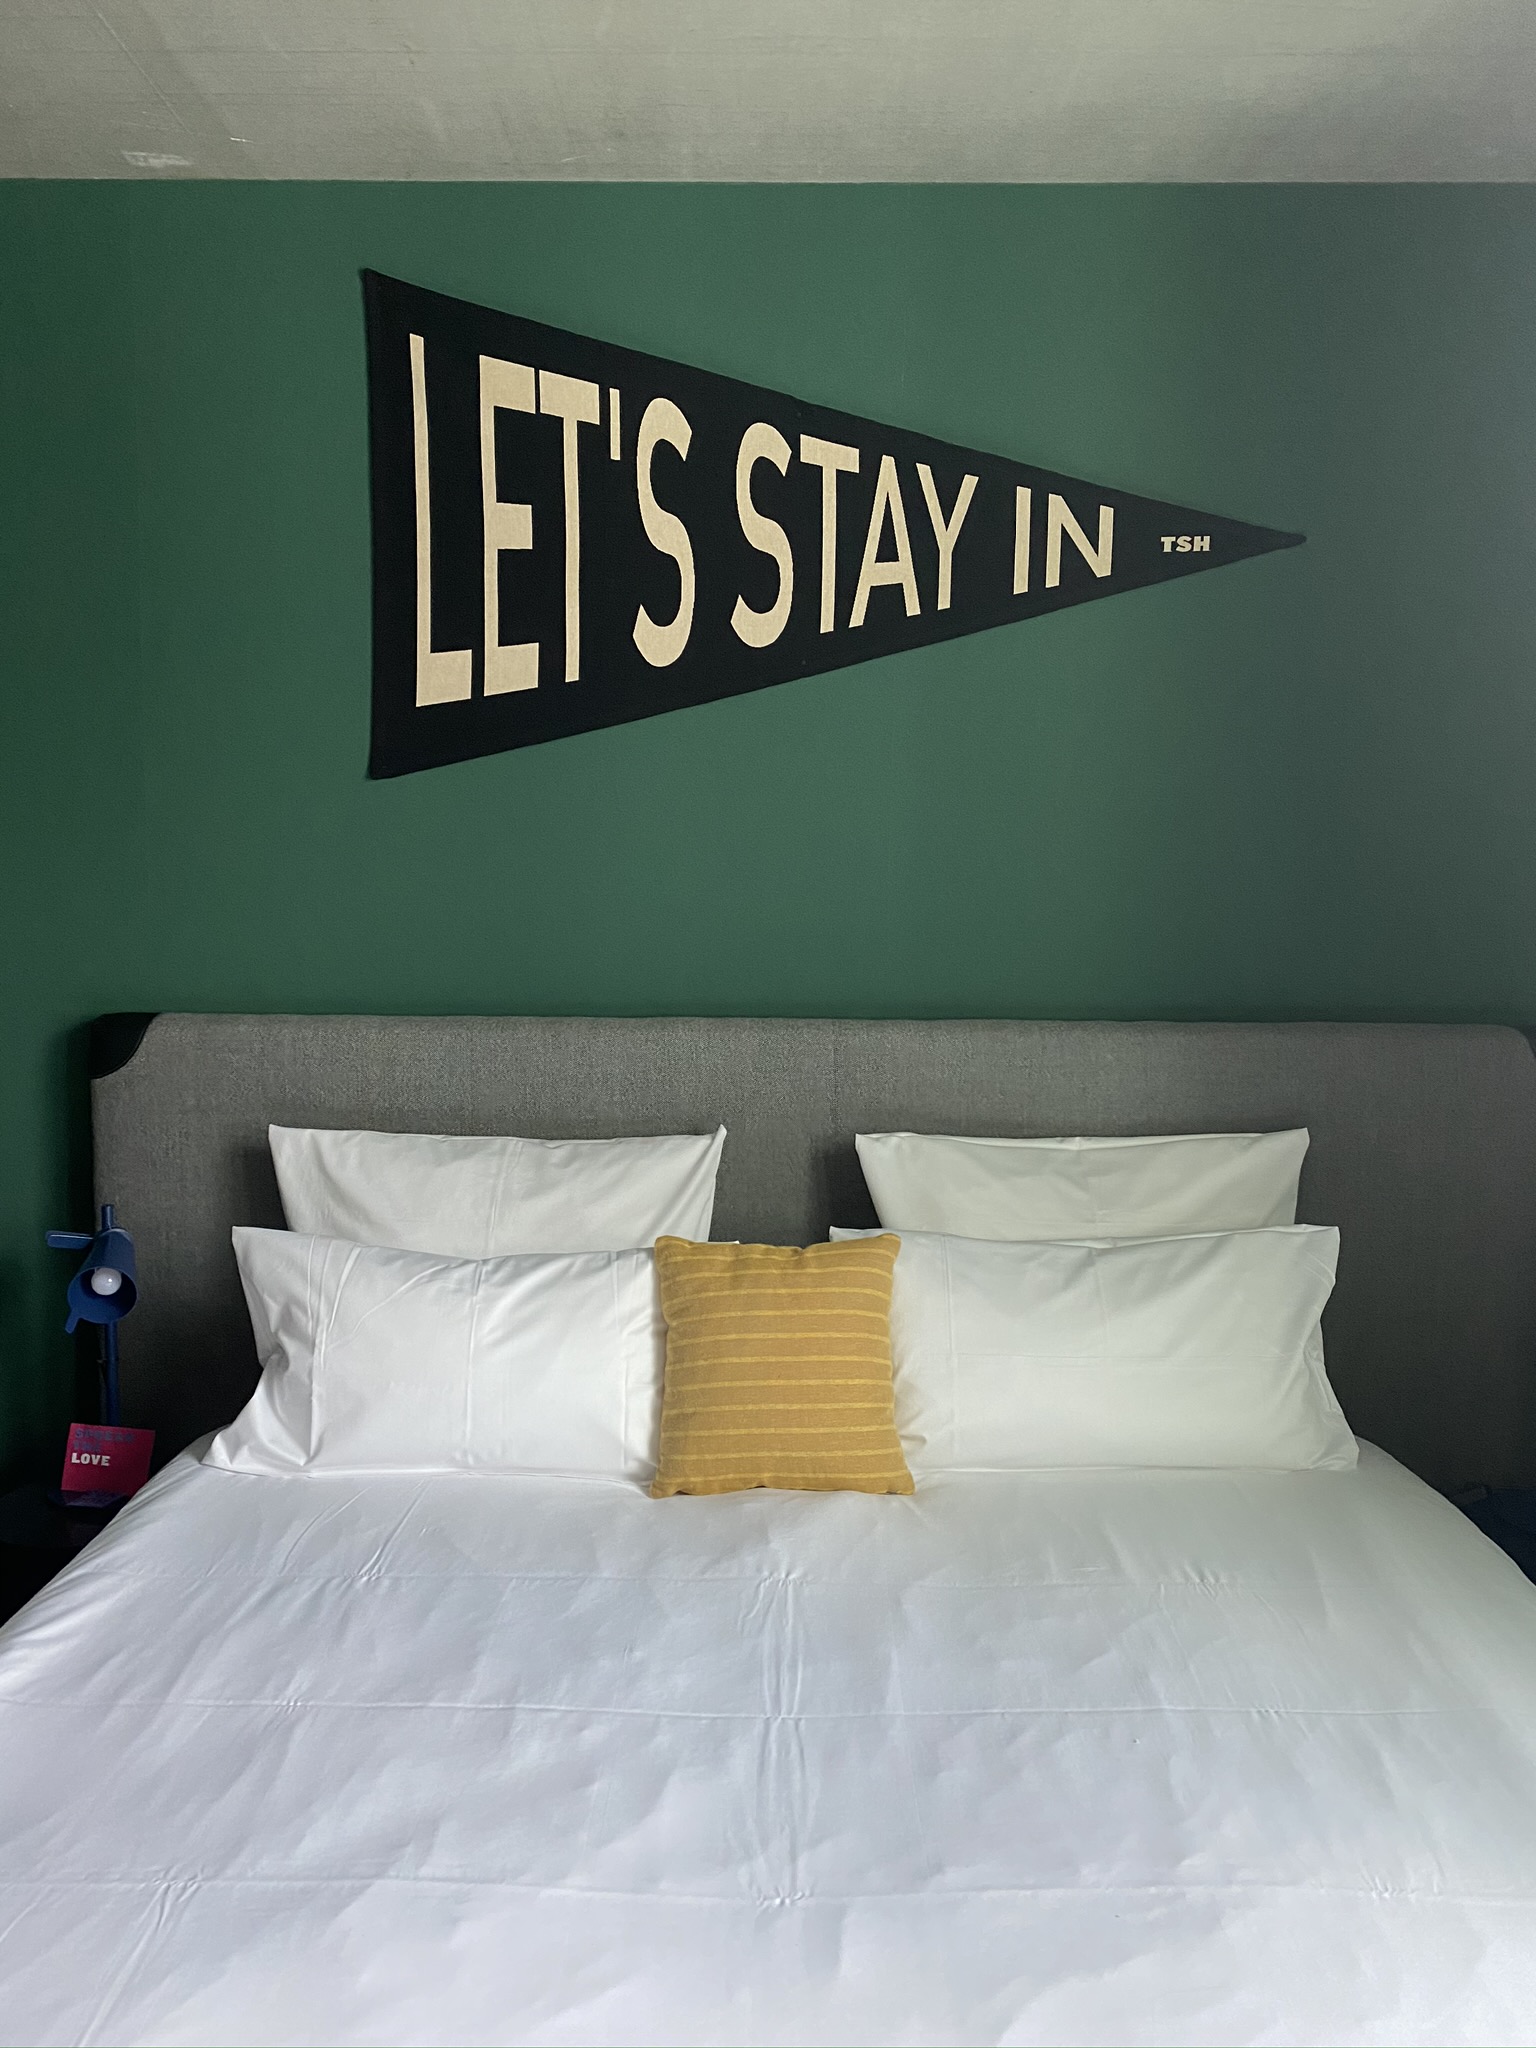 An der Wand über einem Bett steht "Lets stay in"